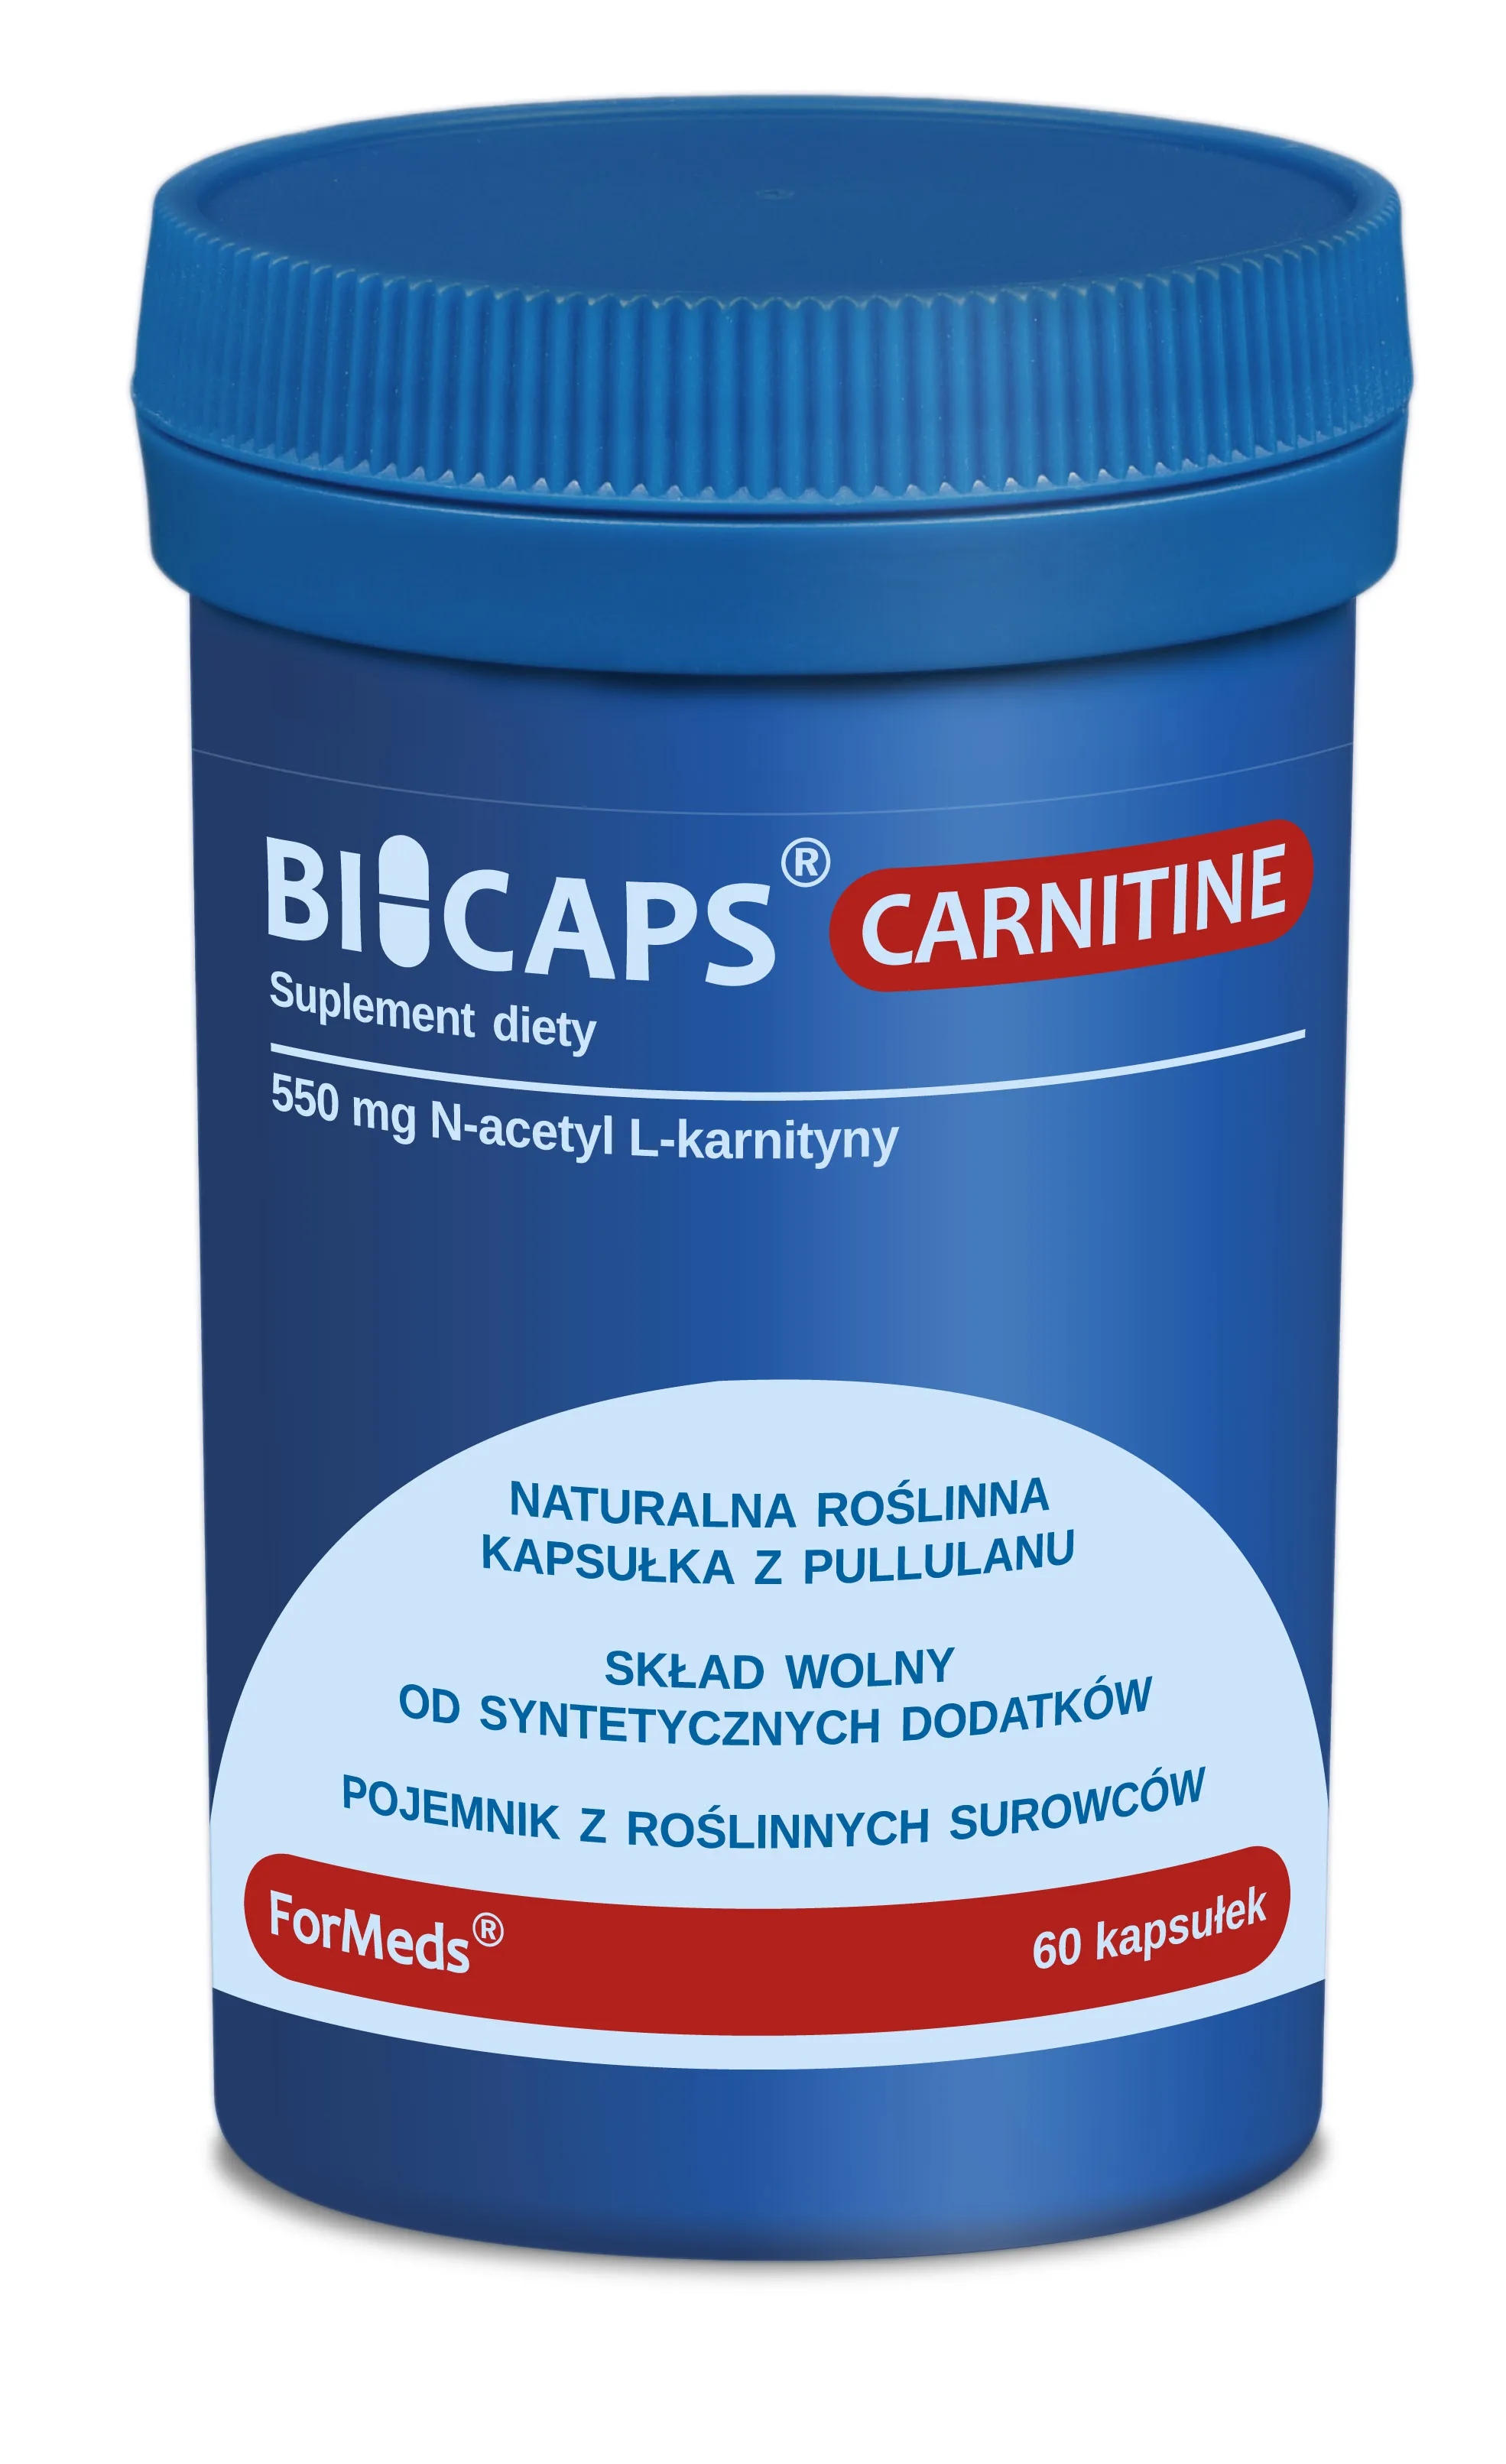 ForMeds Bicaps Carnitine, 60 kapsułek